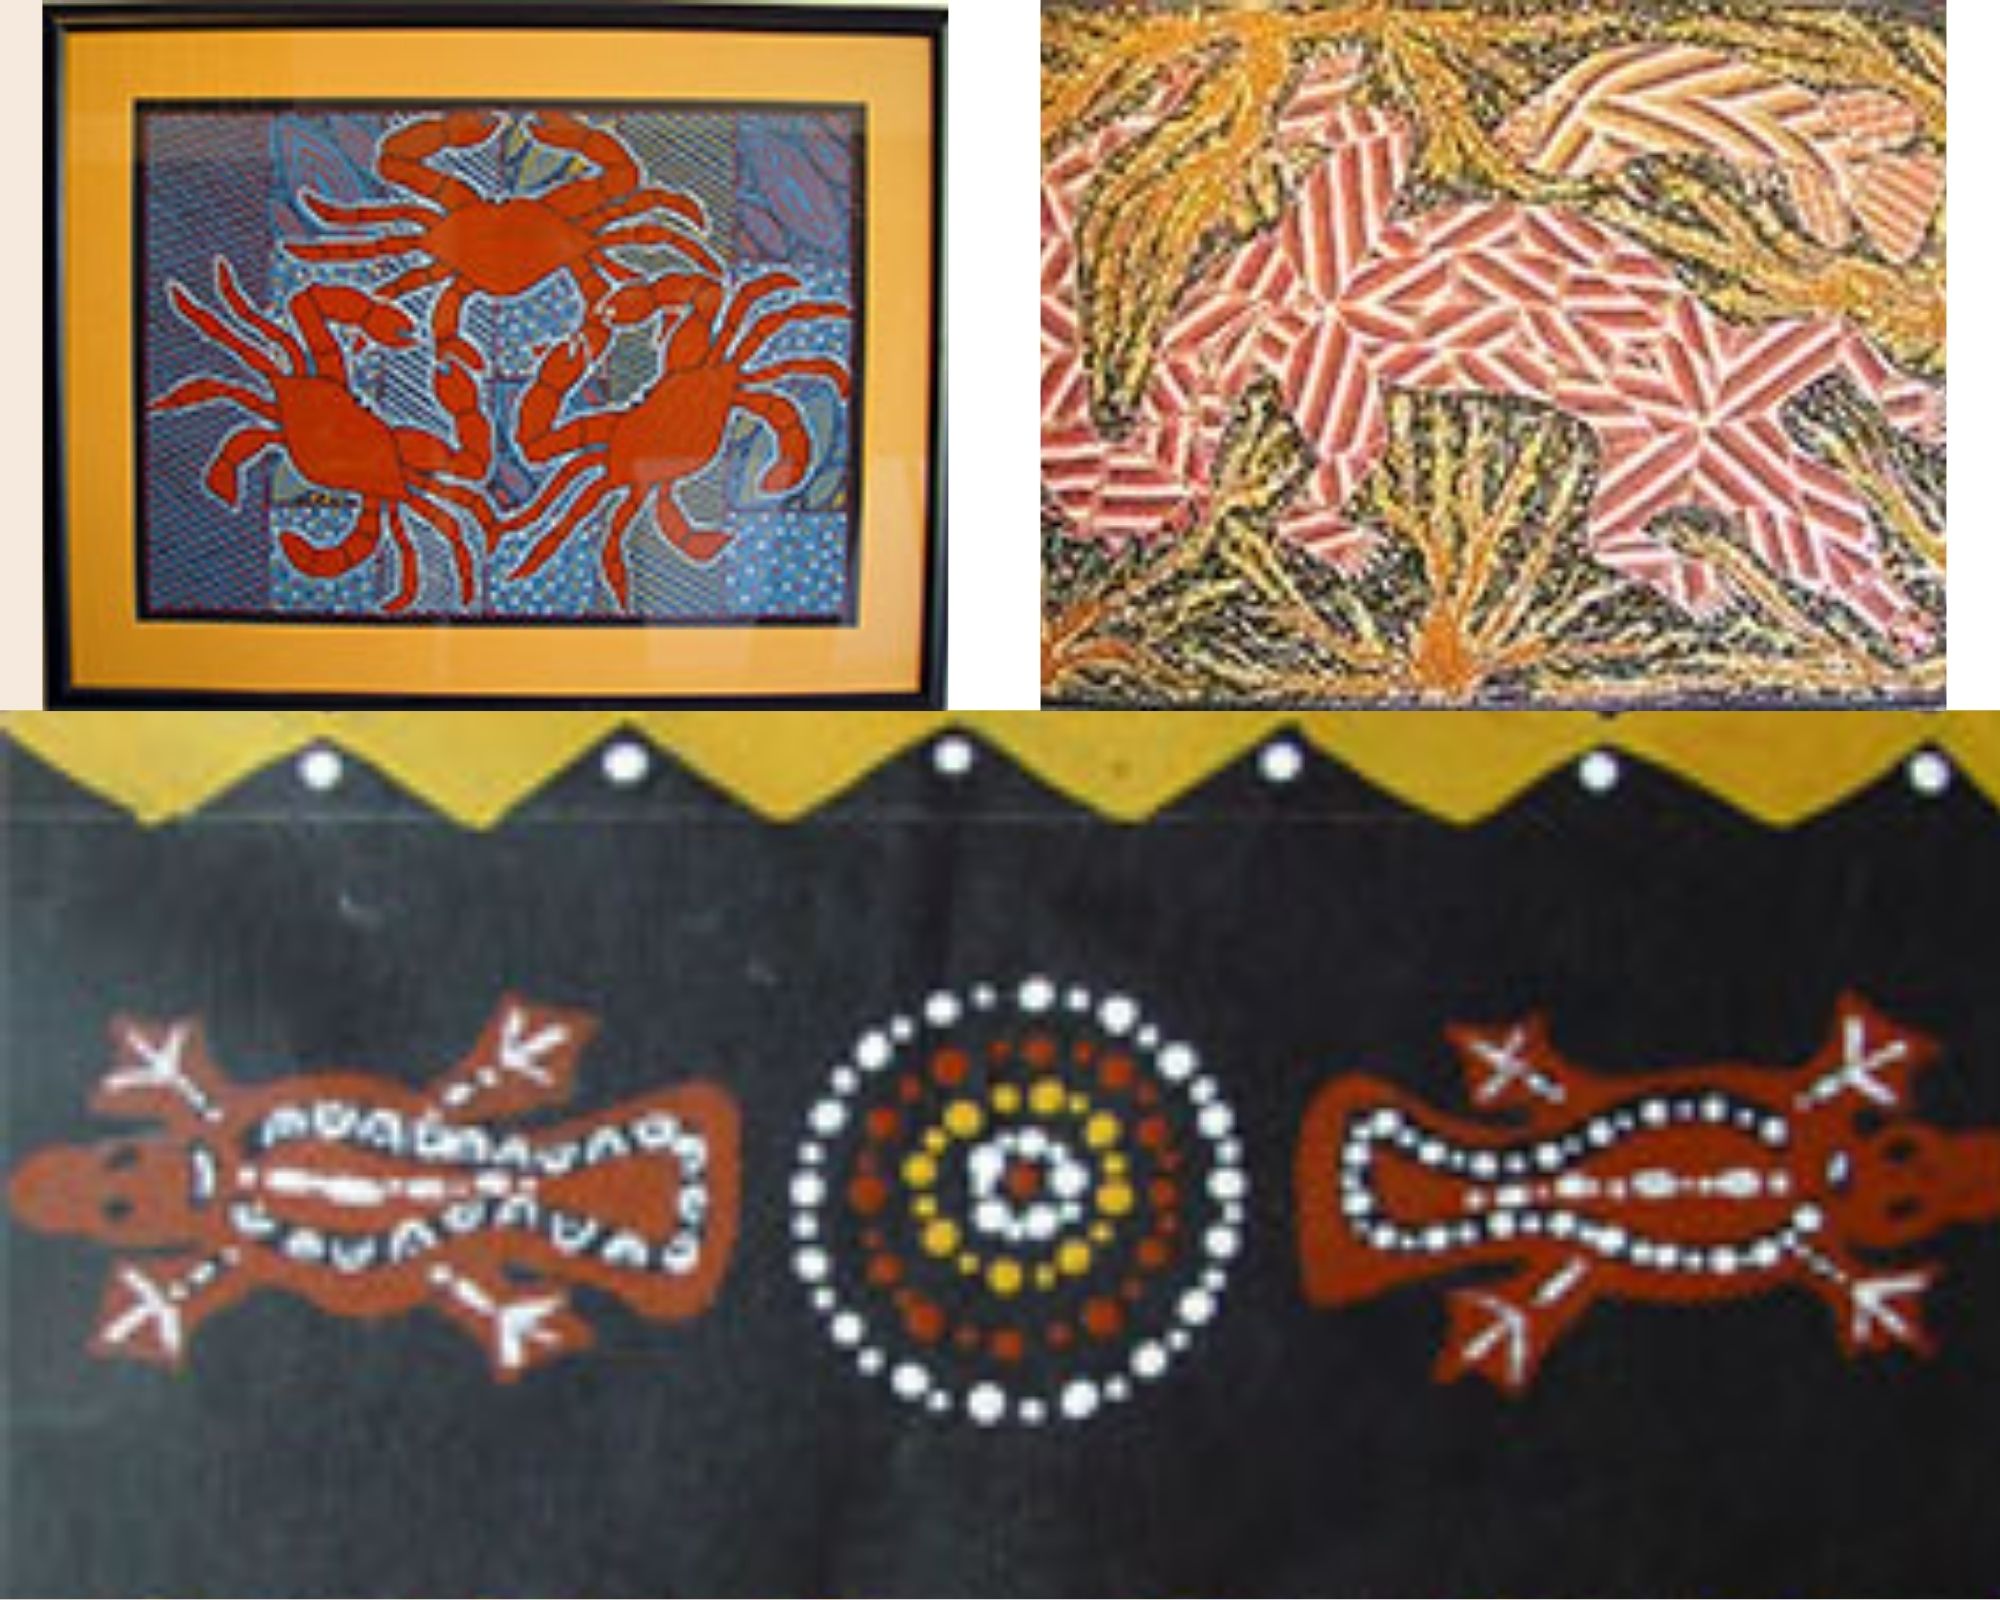 aboriginal art animals for kids